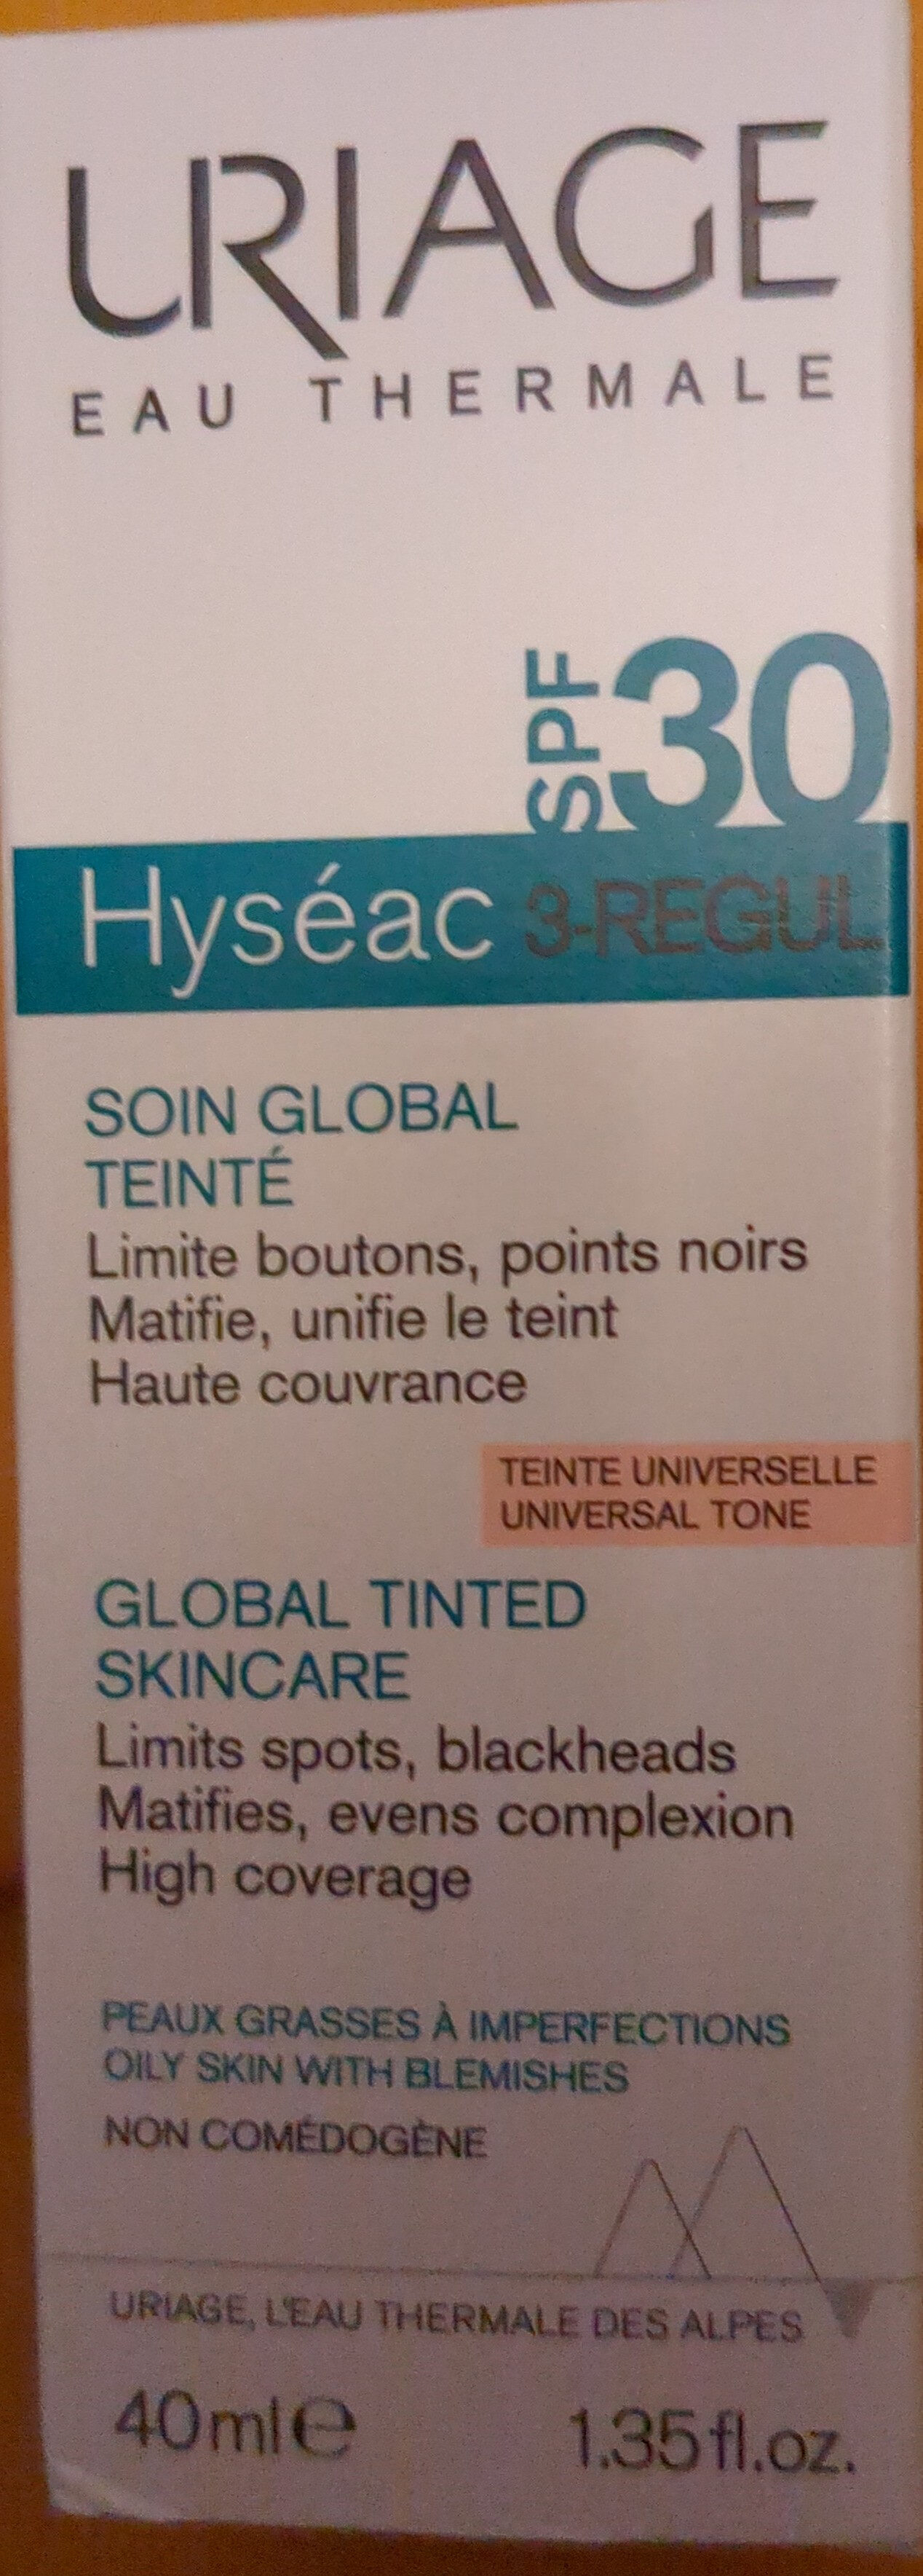 Hyséac 3-REGUL SPF30 - מוצר - fr